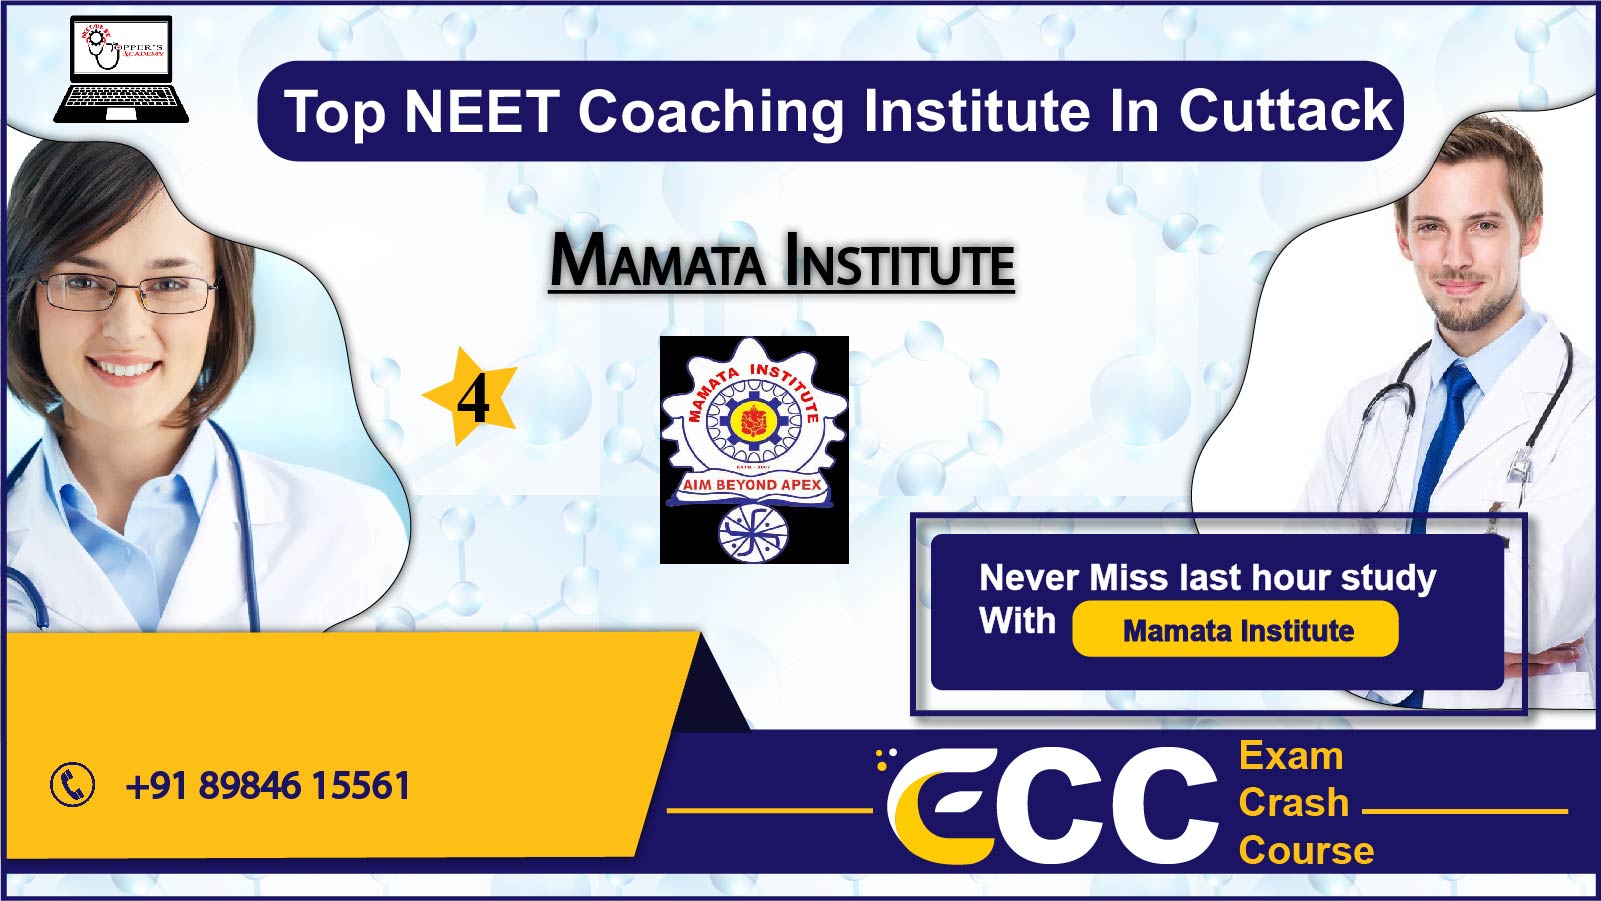  Mamata Institute NEET Coaching in Cuttack 